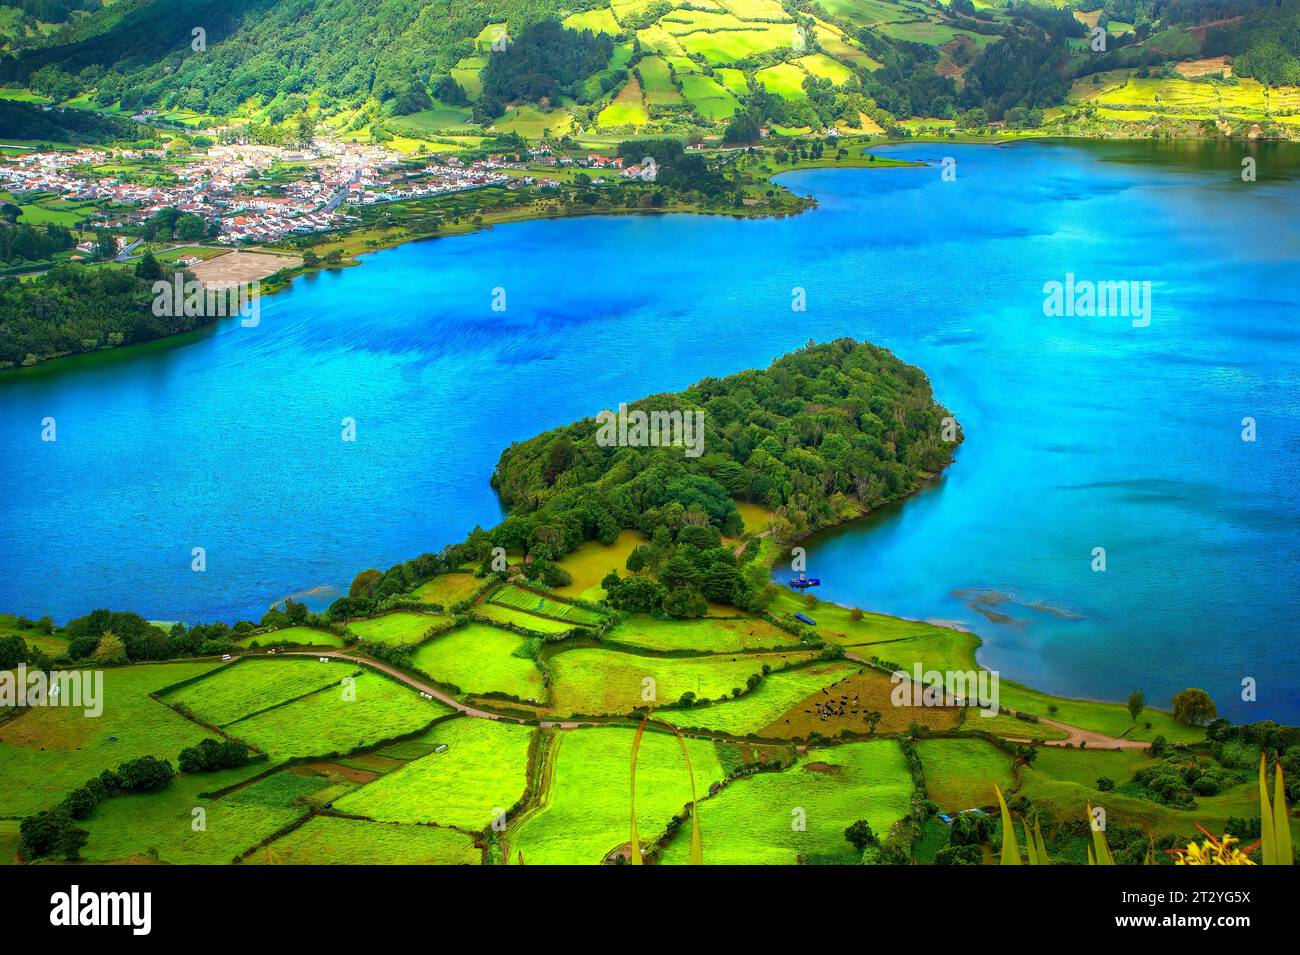 lagoa das Sete Cidades, lagune des sept villes, sur l'île de Sao Miguel, Açores Banque D'Images